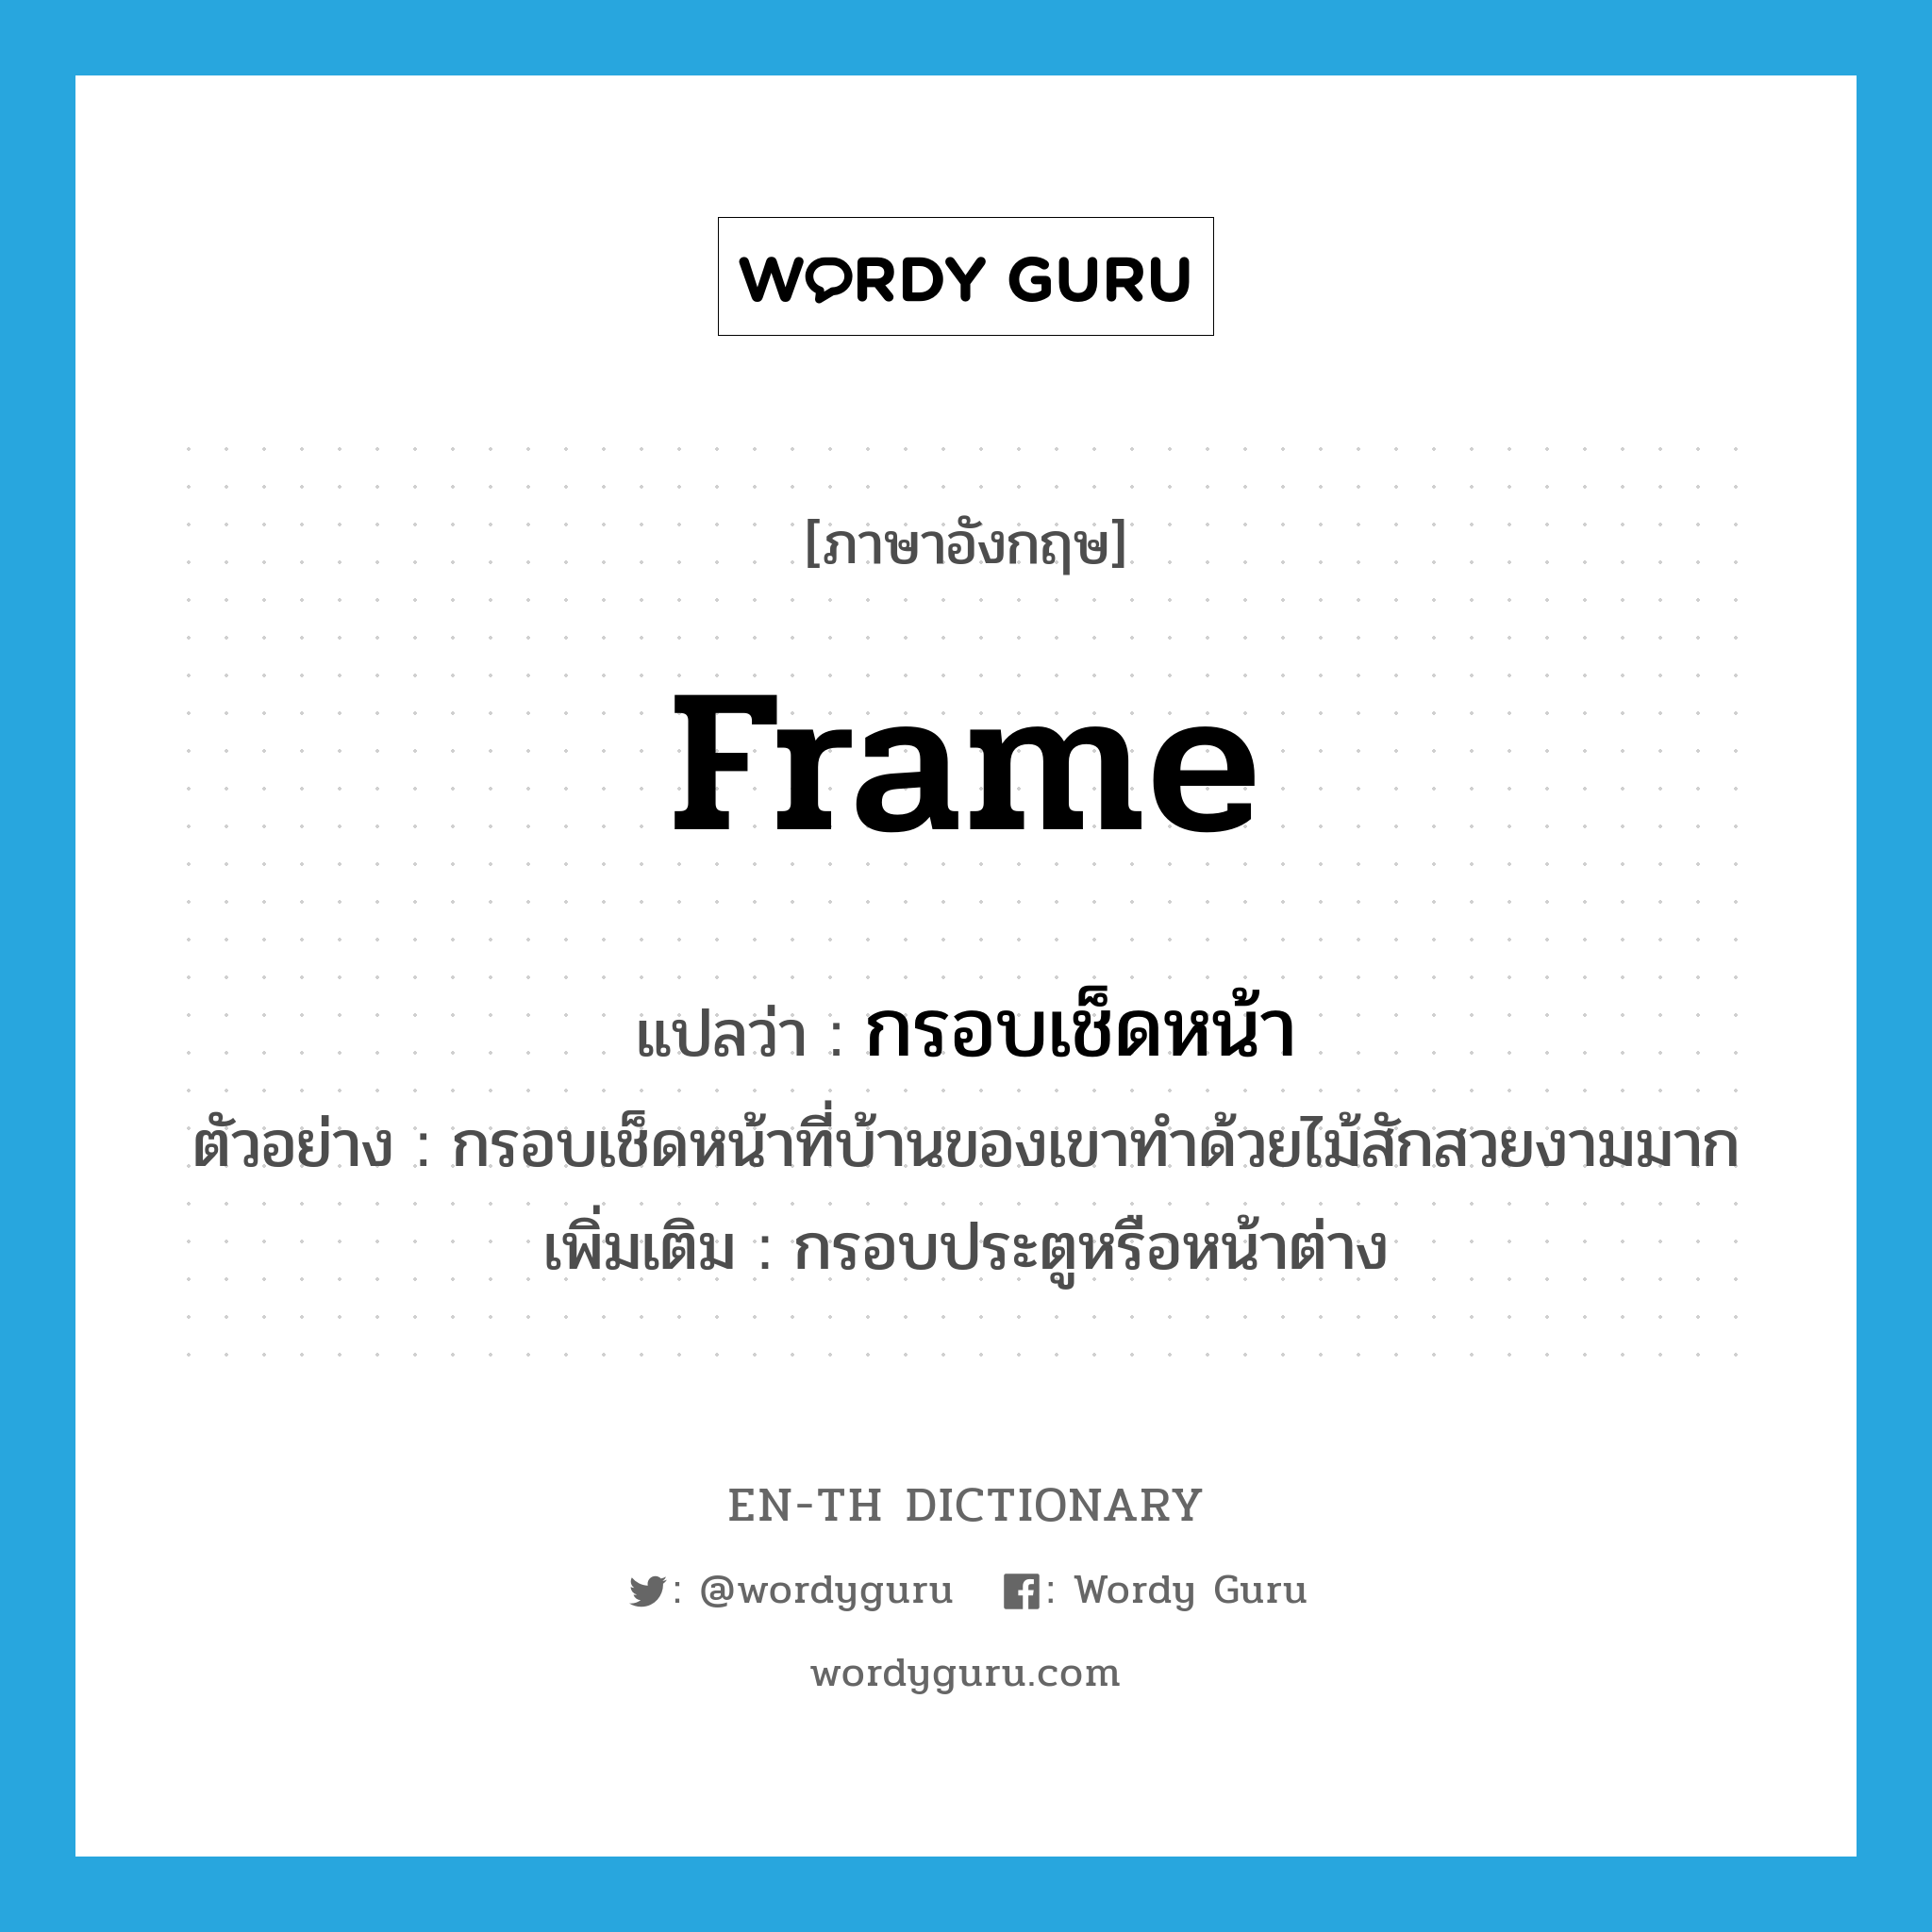 frame แปลว่า?, คำศัพท์ภาษาอังกฤษ frame แปลว่า กรอบเช็ดหน้า ประเภท N ตัวอย่าง กรอบเช็ดหน้าที่บ้านของเขาทำด้วยไม้สักสวยงามมาก เพิ่มเติม กรอบประตูหรือหน้าต่าง หมวด N